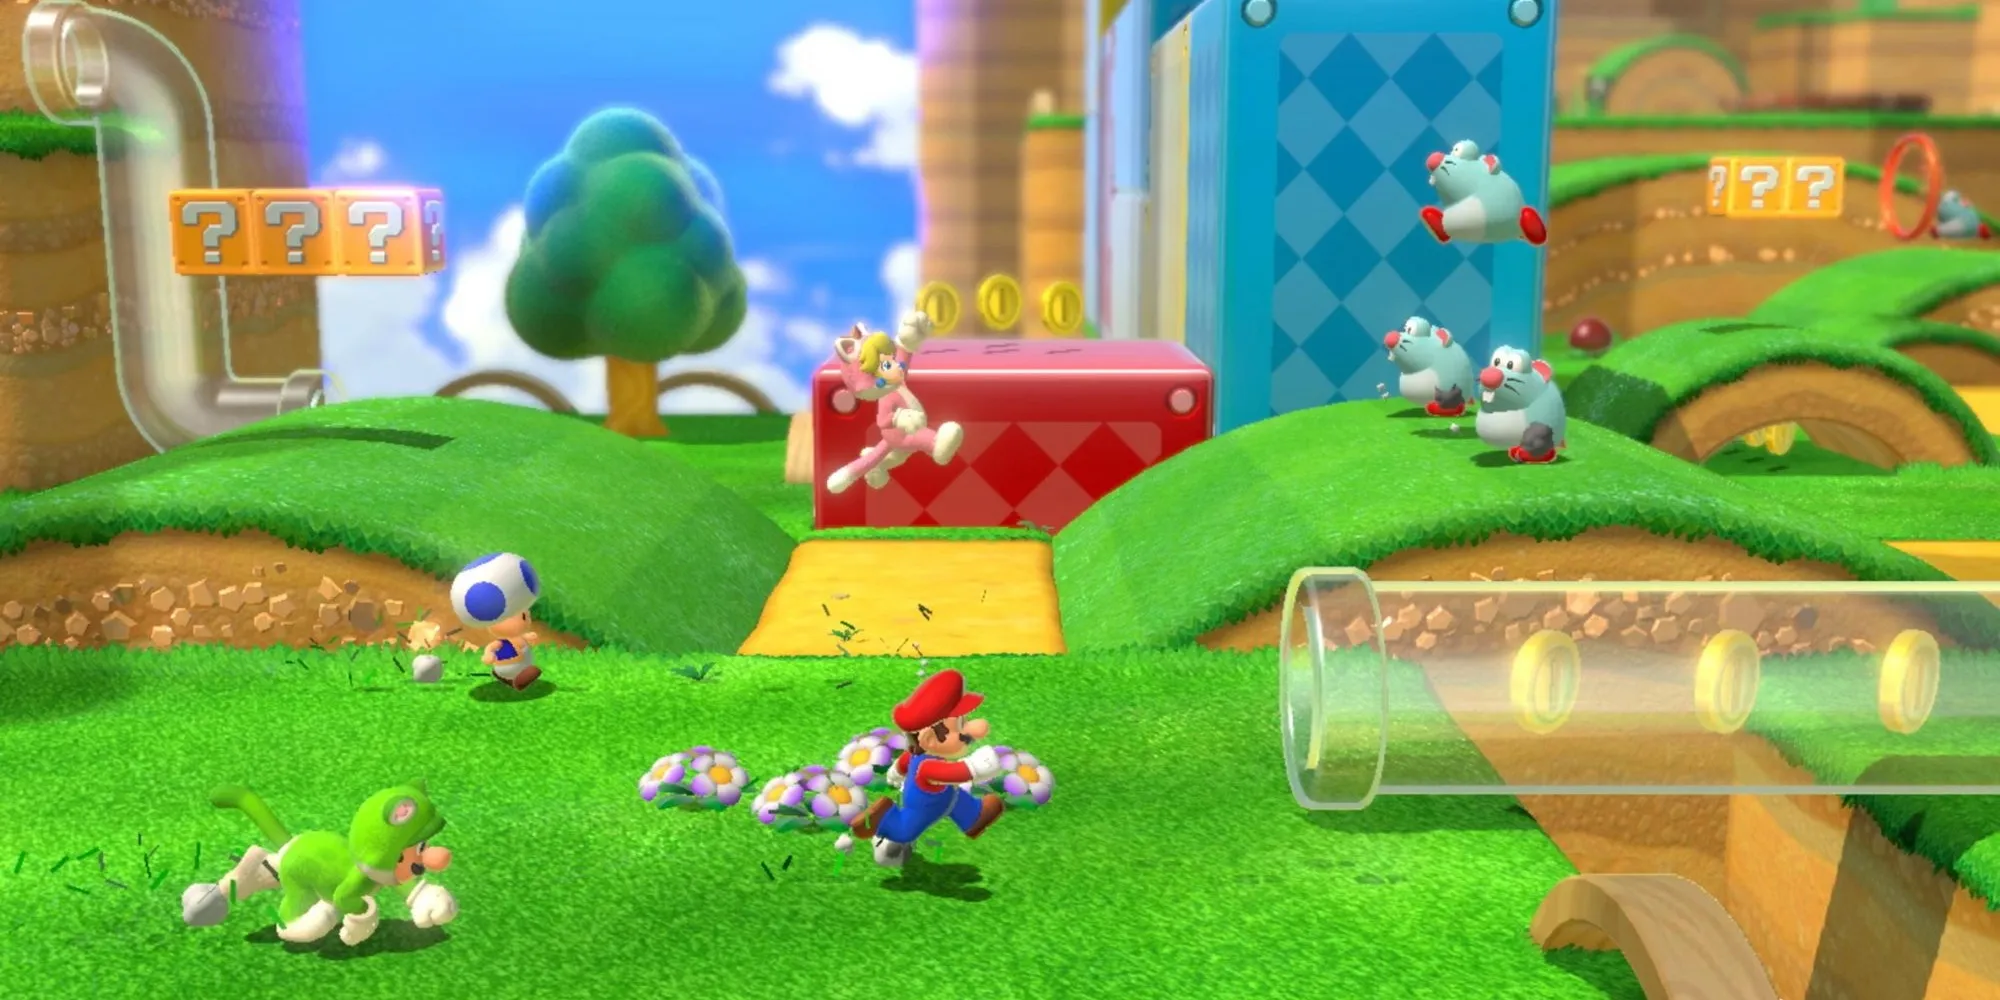 Toad、Luigi、Peach、およびMarioがスーパーマリオ3Dワールドのレベルを駆け抜けています